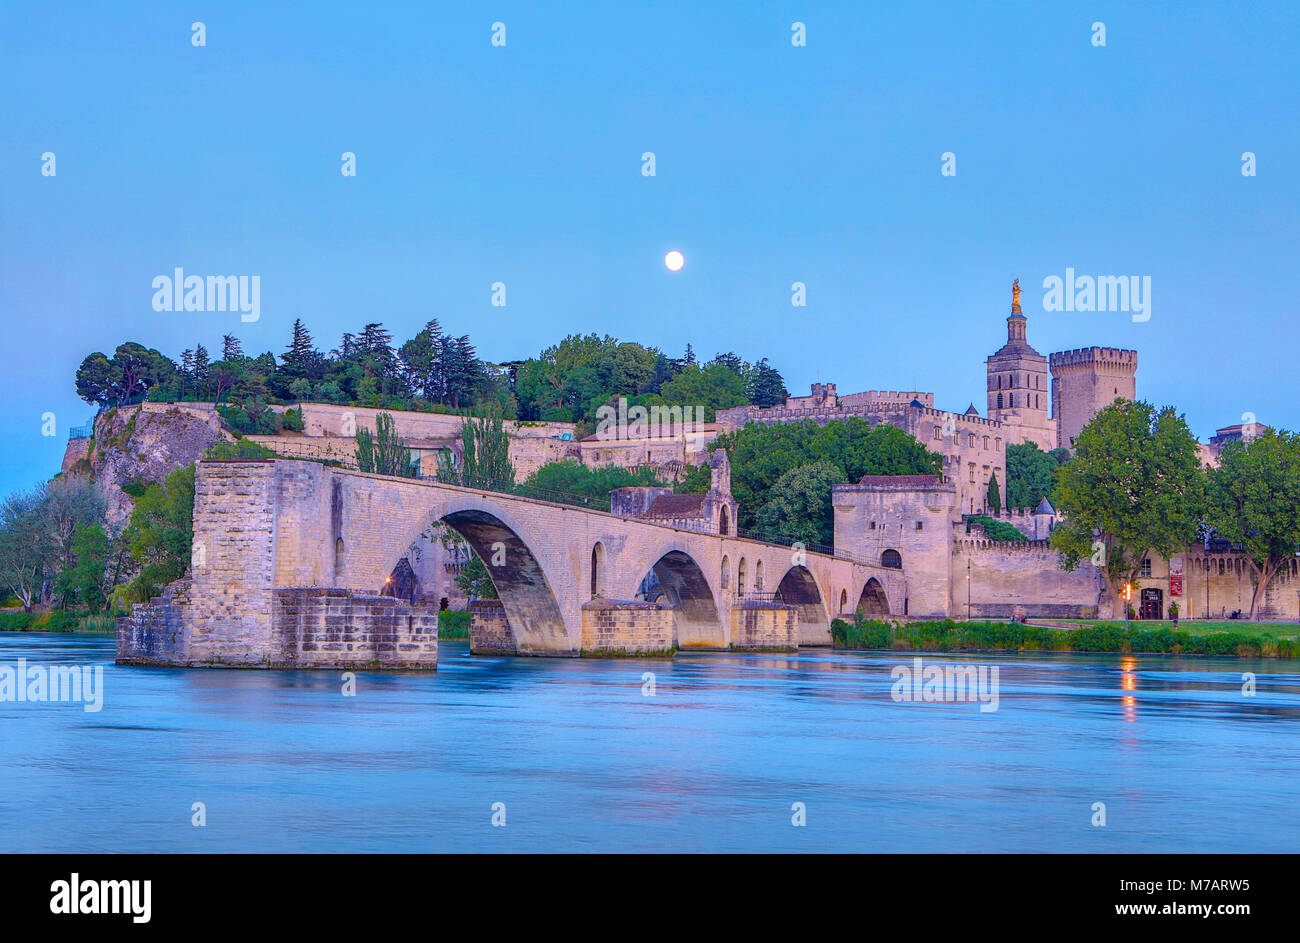 France, Provence, ville d'Avignon, le Palais des Papes, St. Bénézet, pont sur le Rhône au clair de lune Banque D'Images